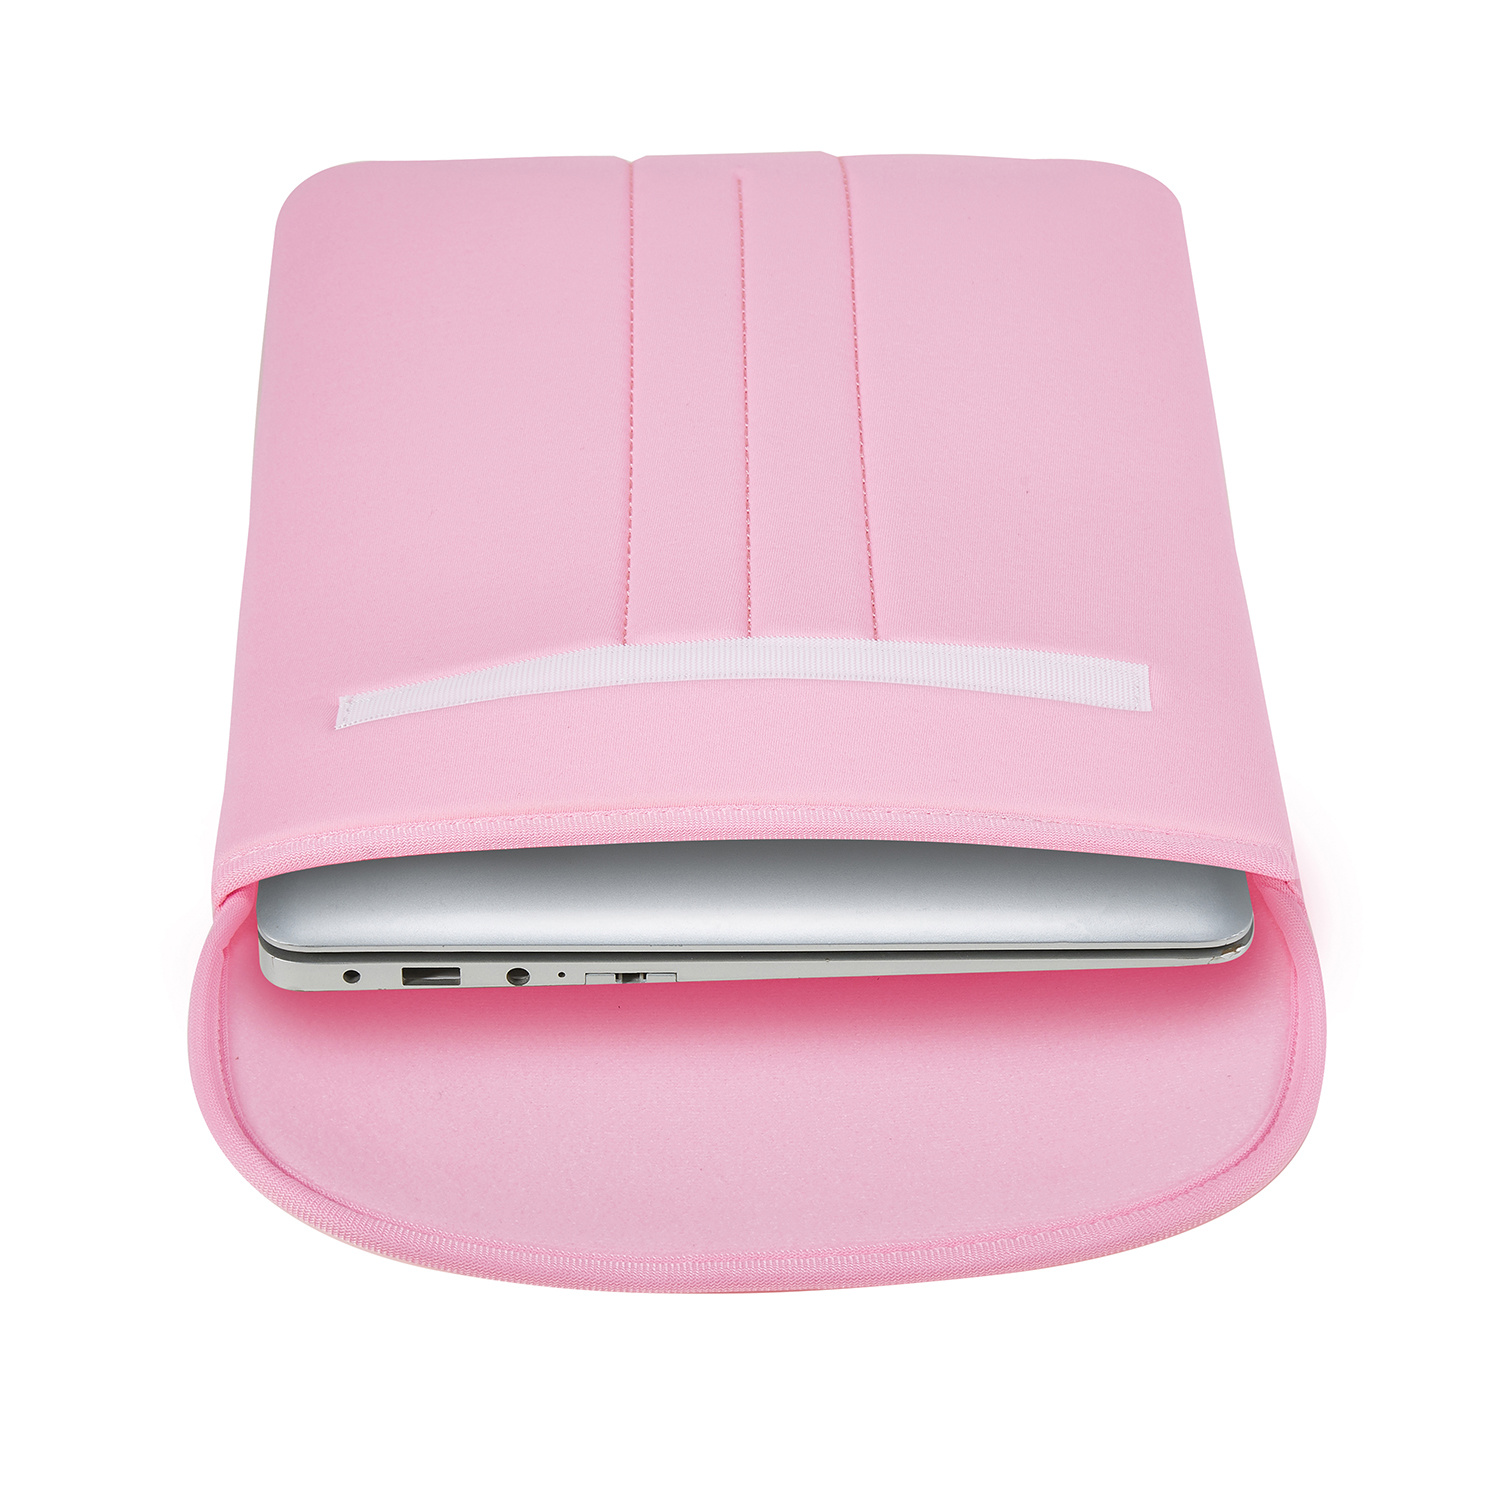 Afkorting Luchtvaartmaatschappijen morfine Case2go Laptop Sleeve - Laptophoes geschikt voor Macbook, Laptop en  Chromebook - 13 inch - Roze | Case2go.nl